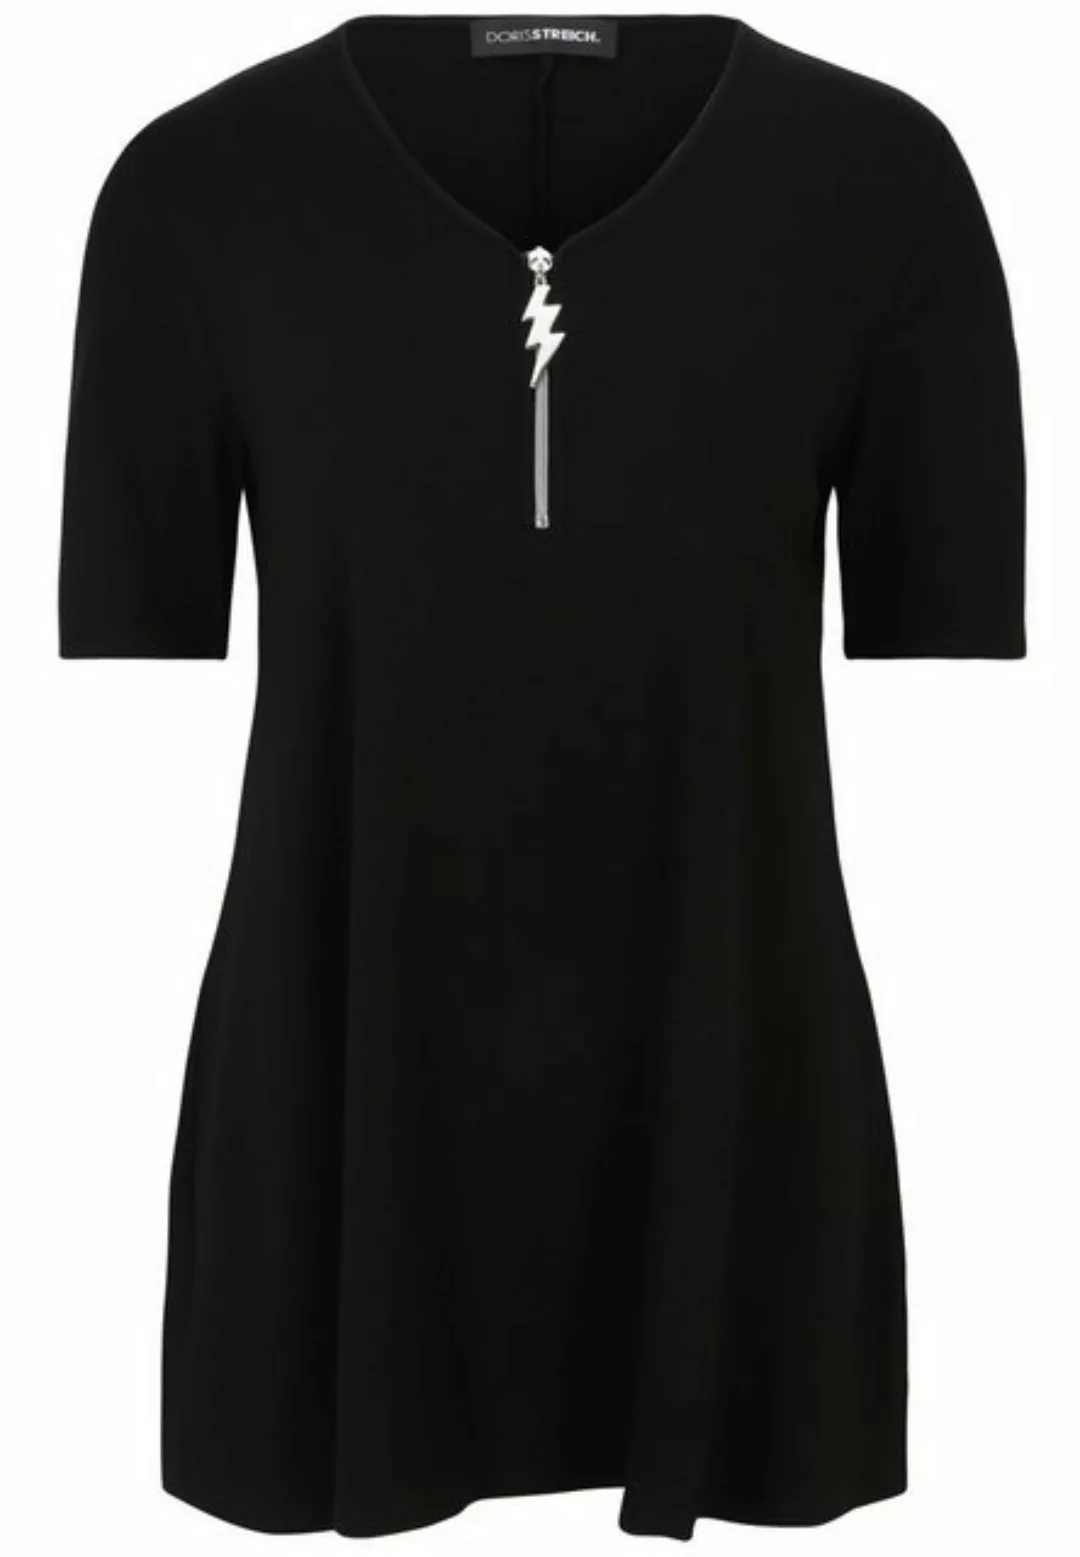 Doris Streich Shirtbluse Tunika mit Reißverschluss günstig online kaufen